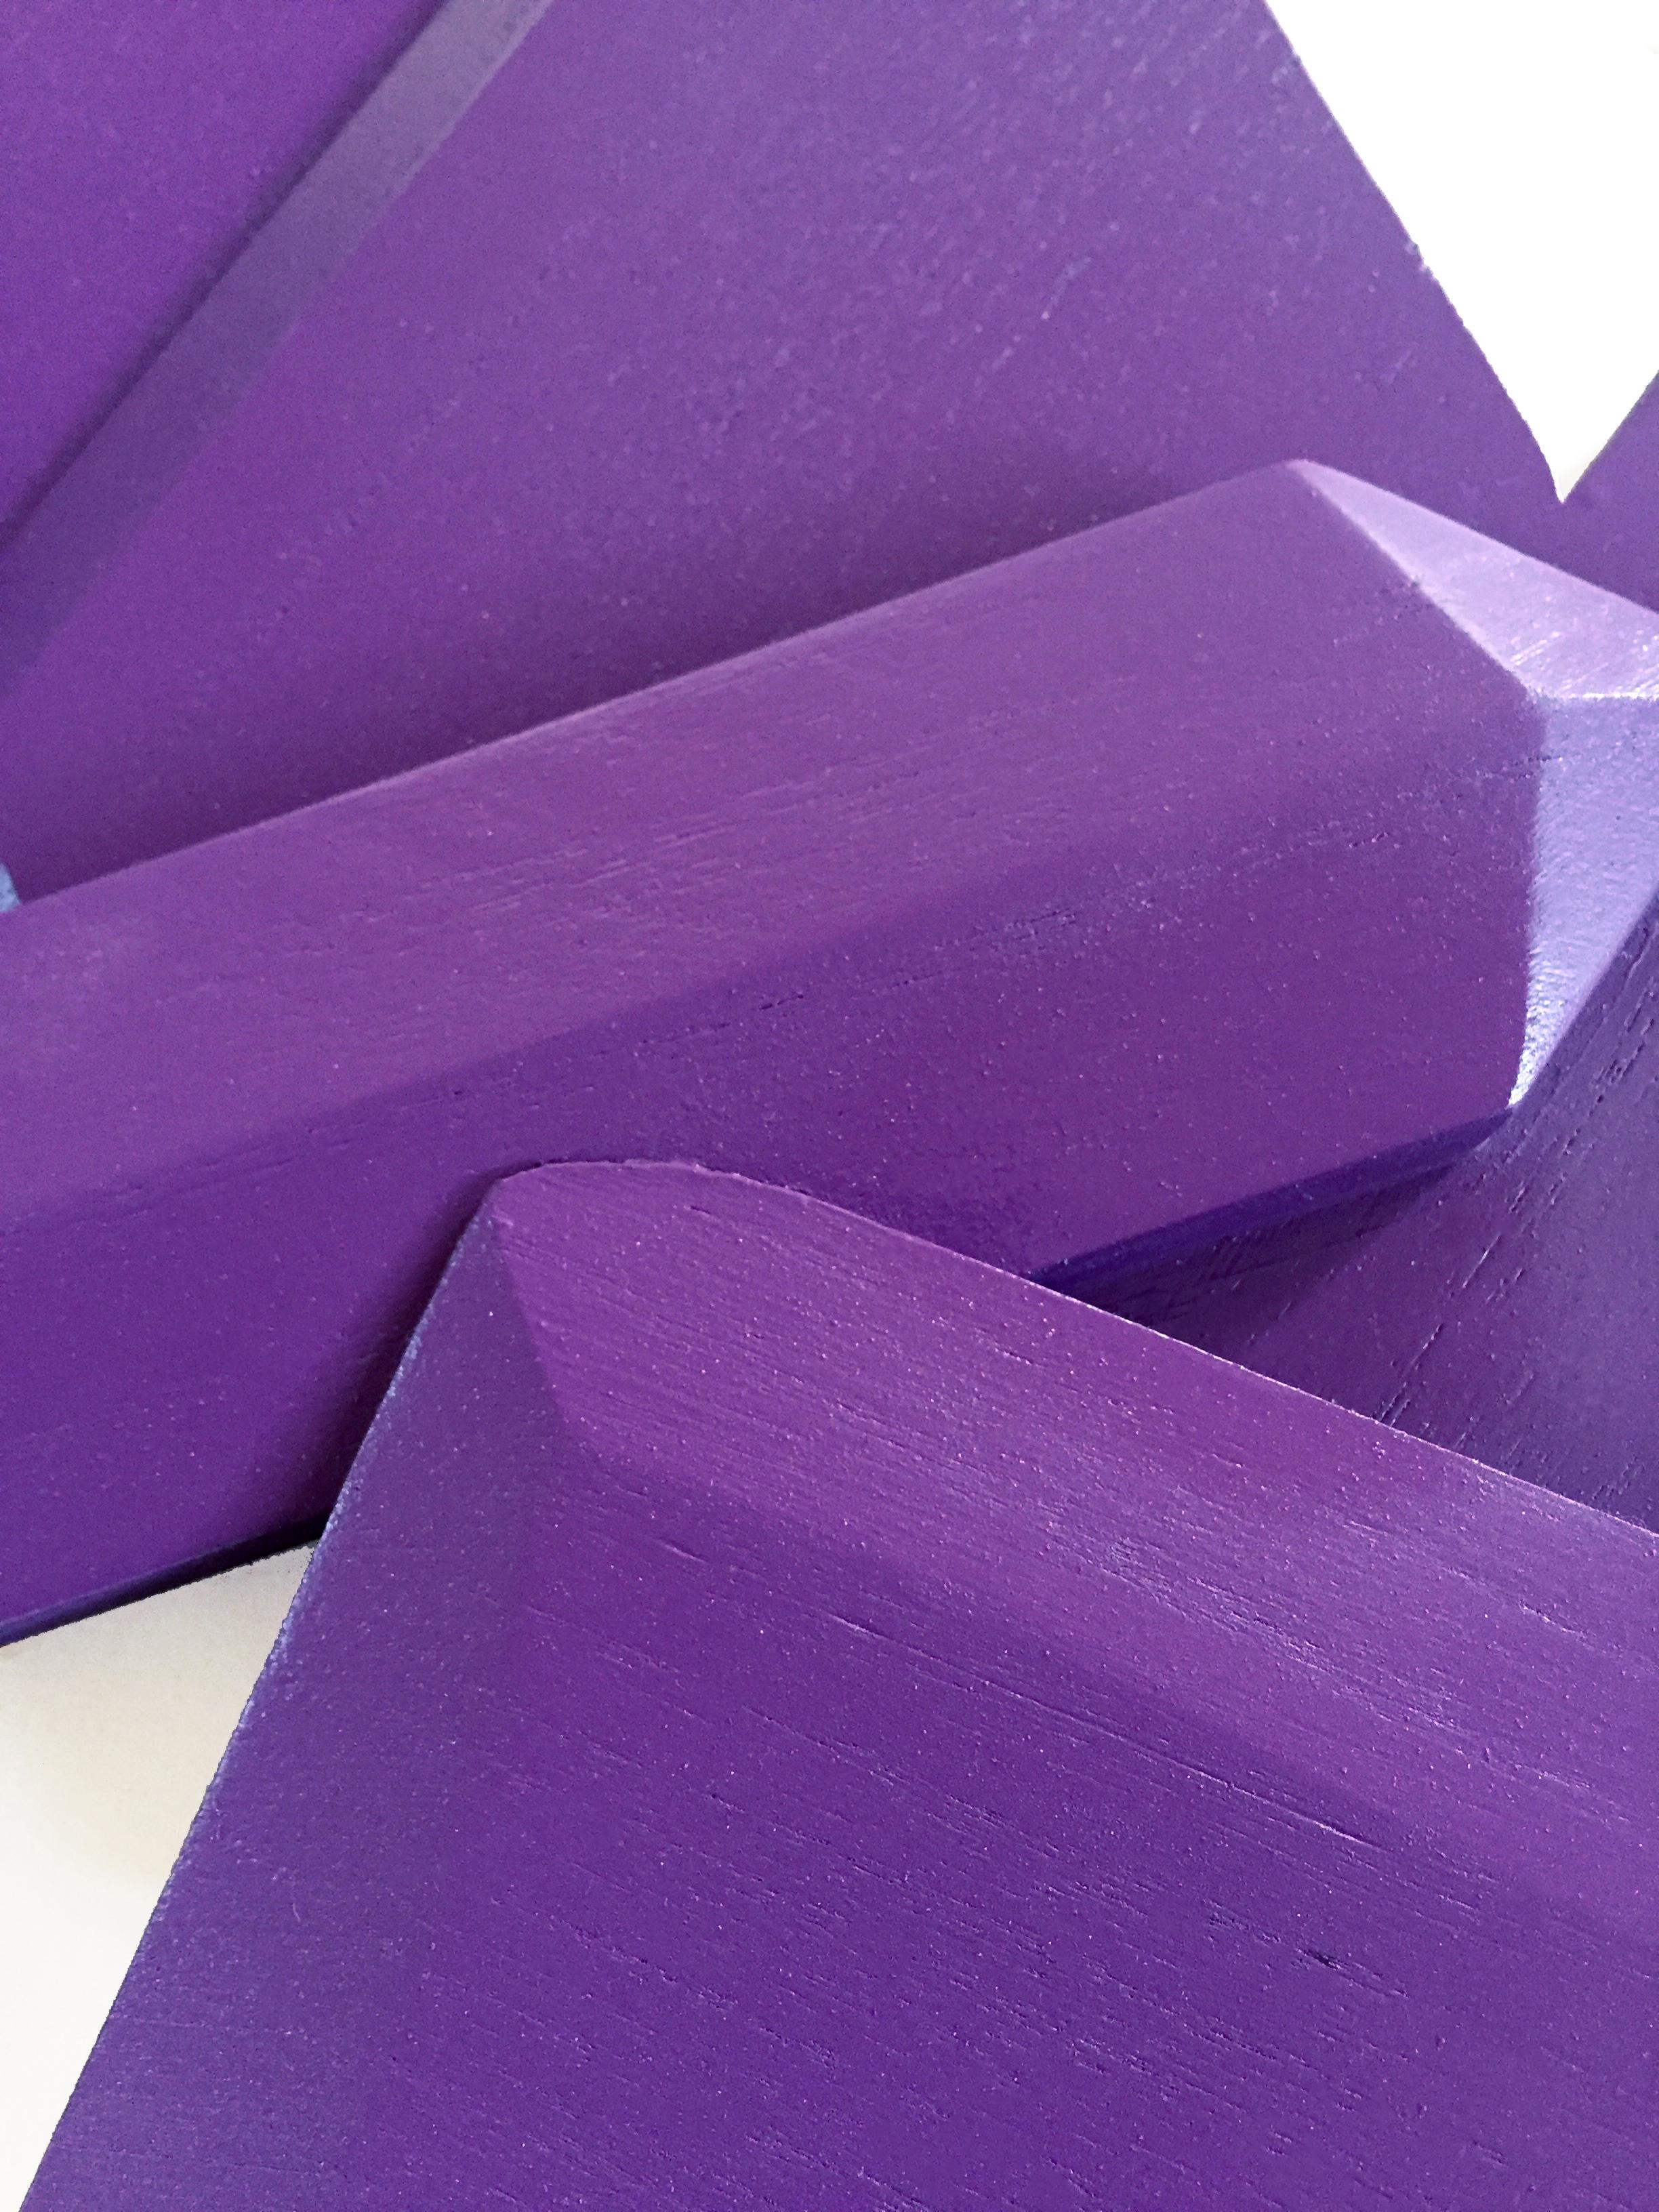 Ultra Violet Crystal (Holz, zeitgenössisches Design, geometrisch, violett, Skulptur) 2